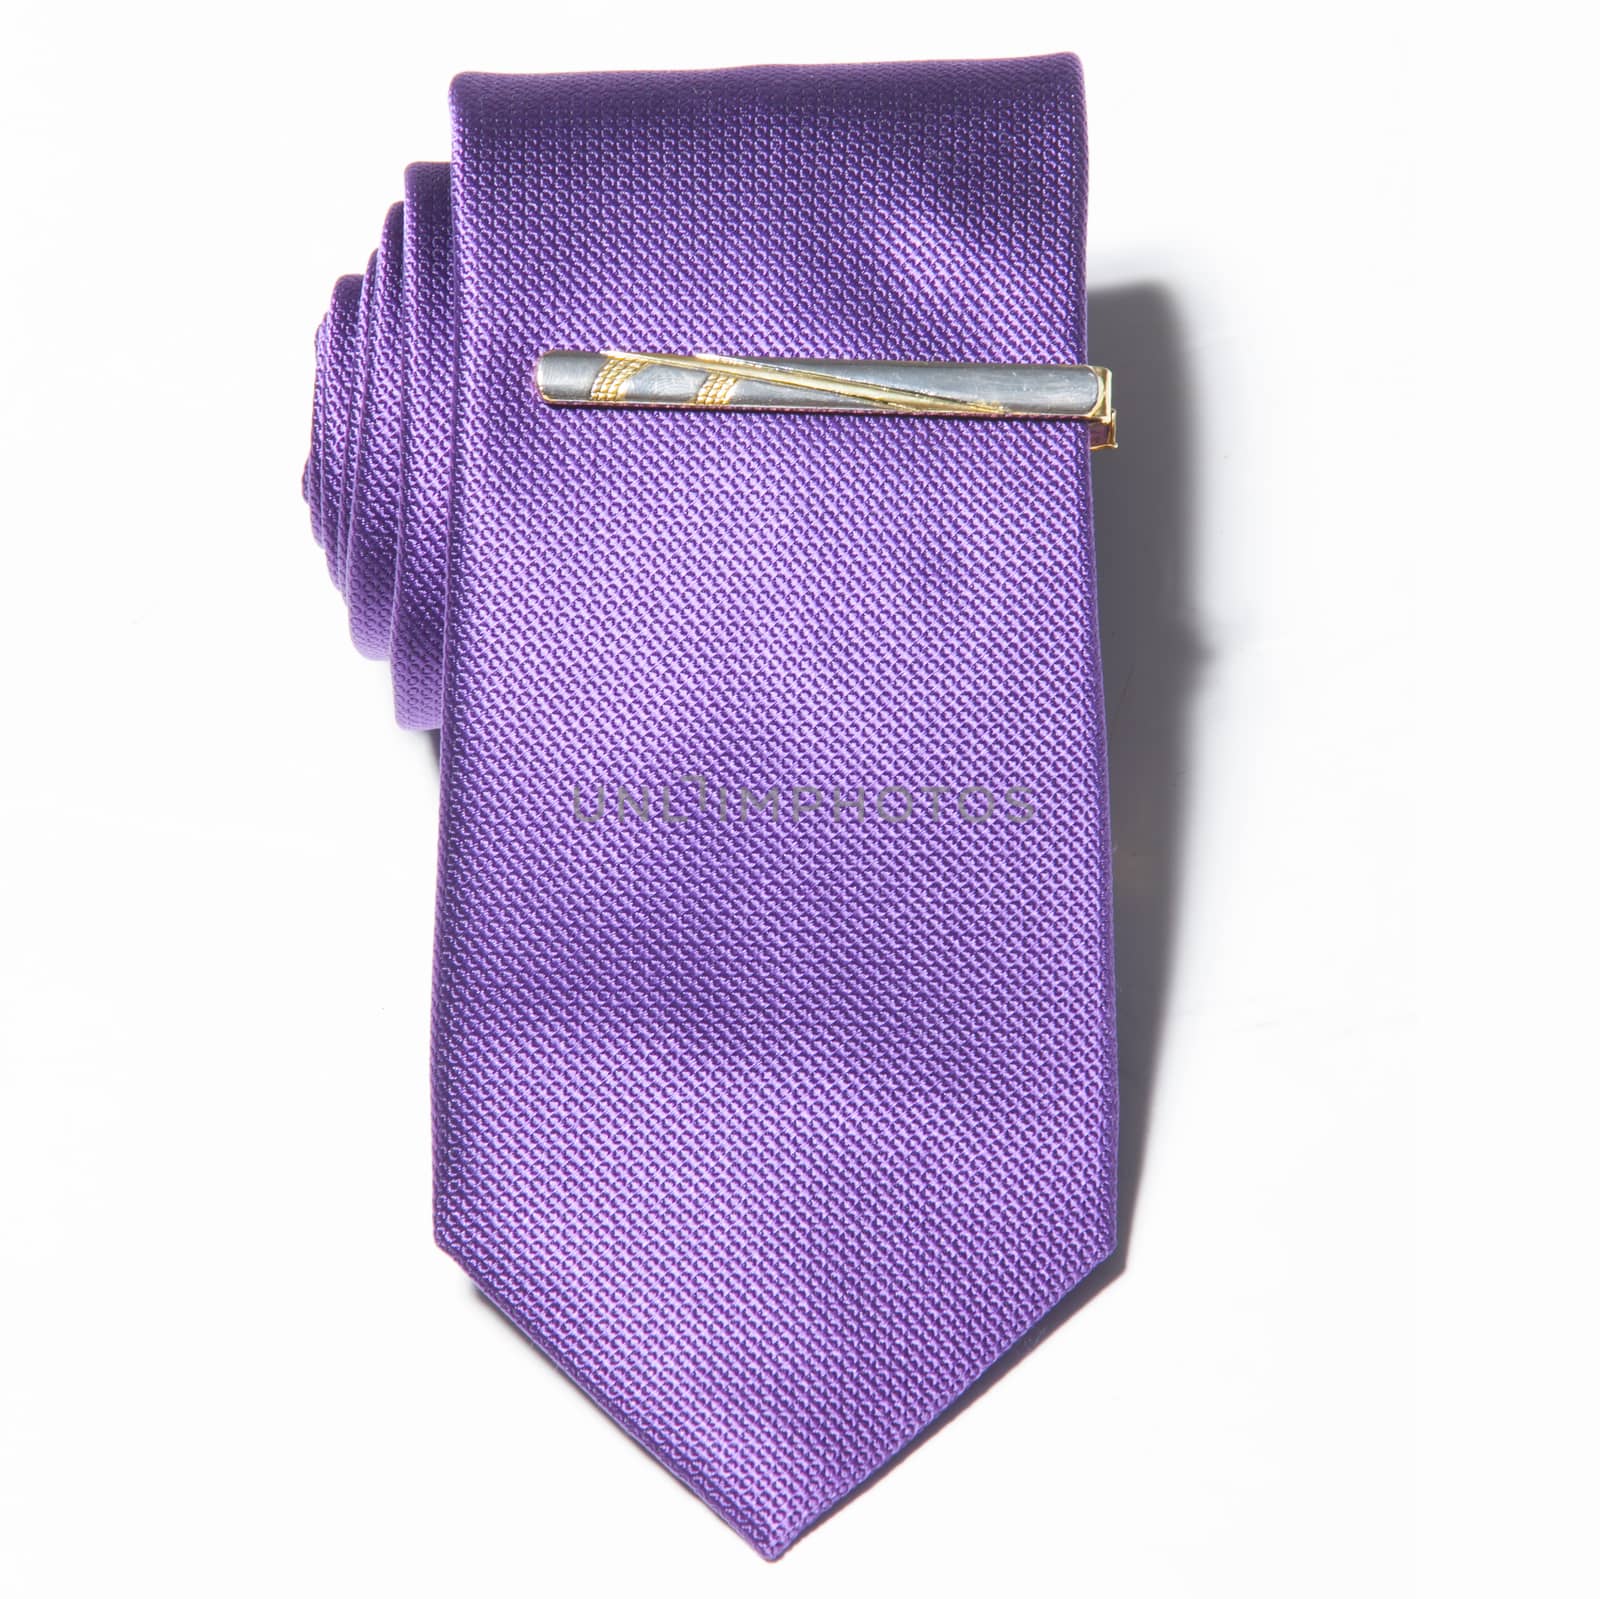 purple tie on a white background by sarymsakov